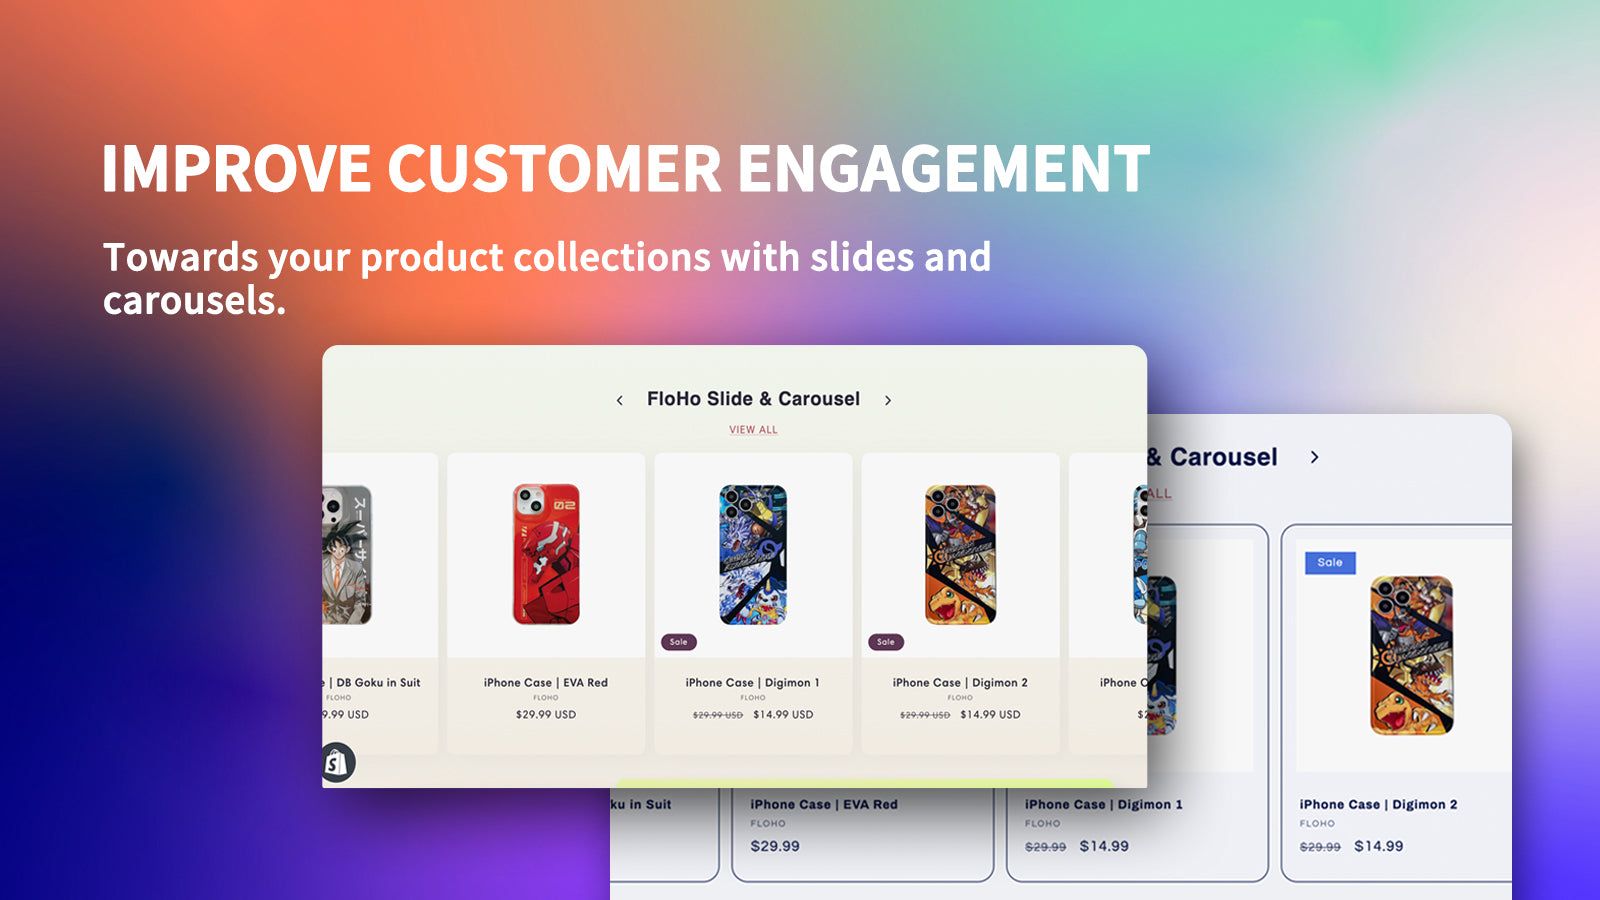 FloHo Product Carousel - Improve customer engagement